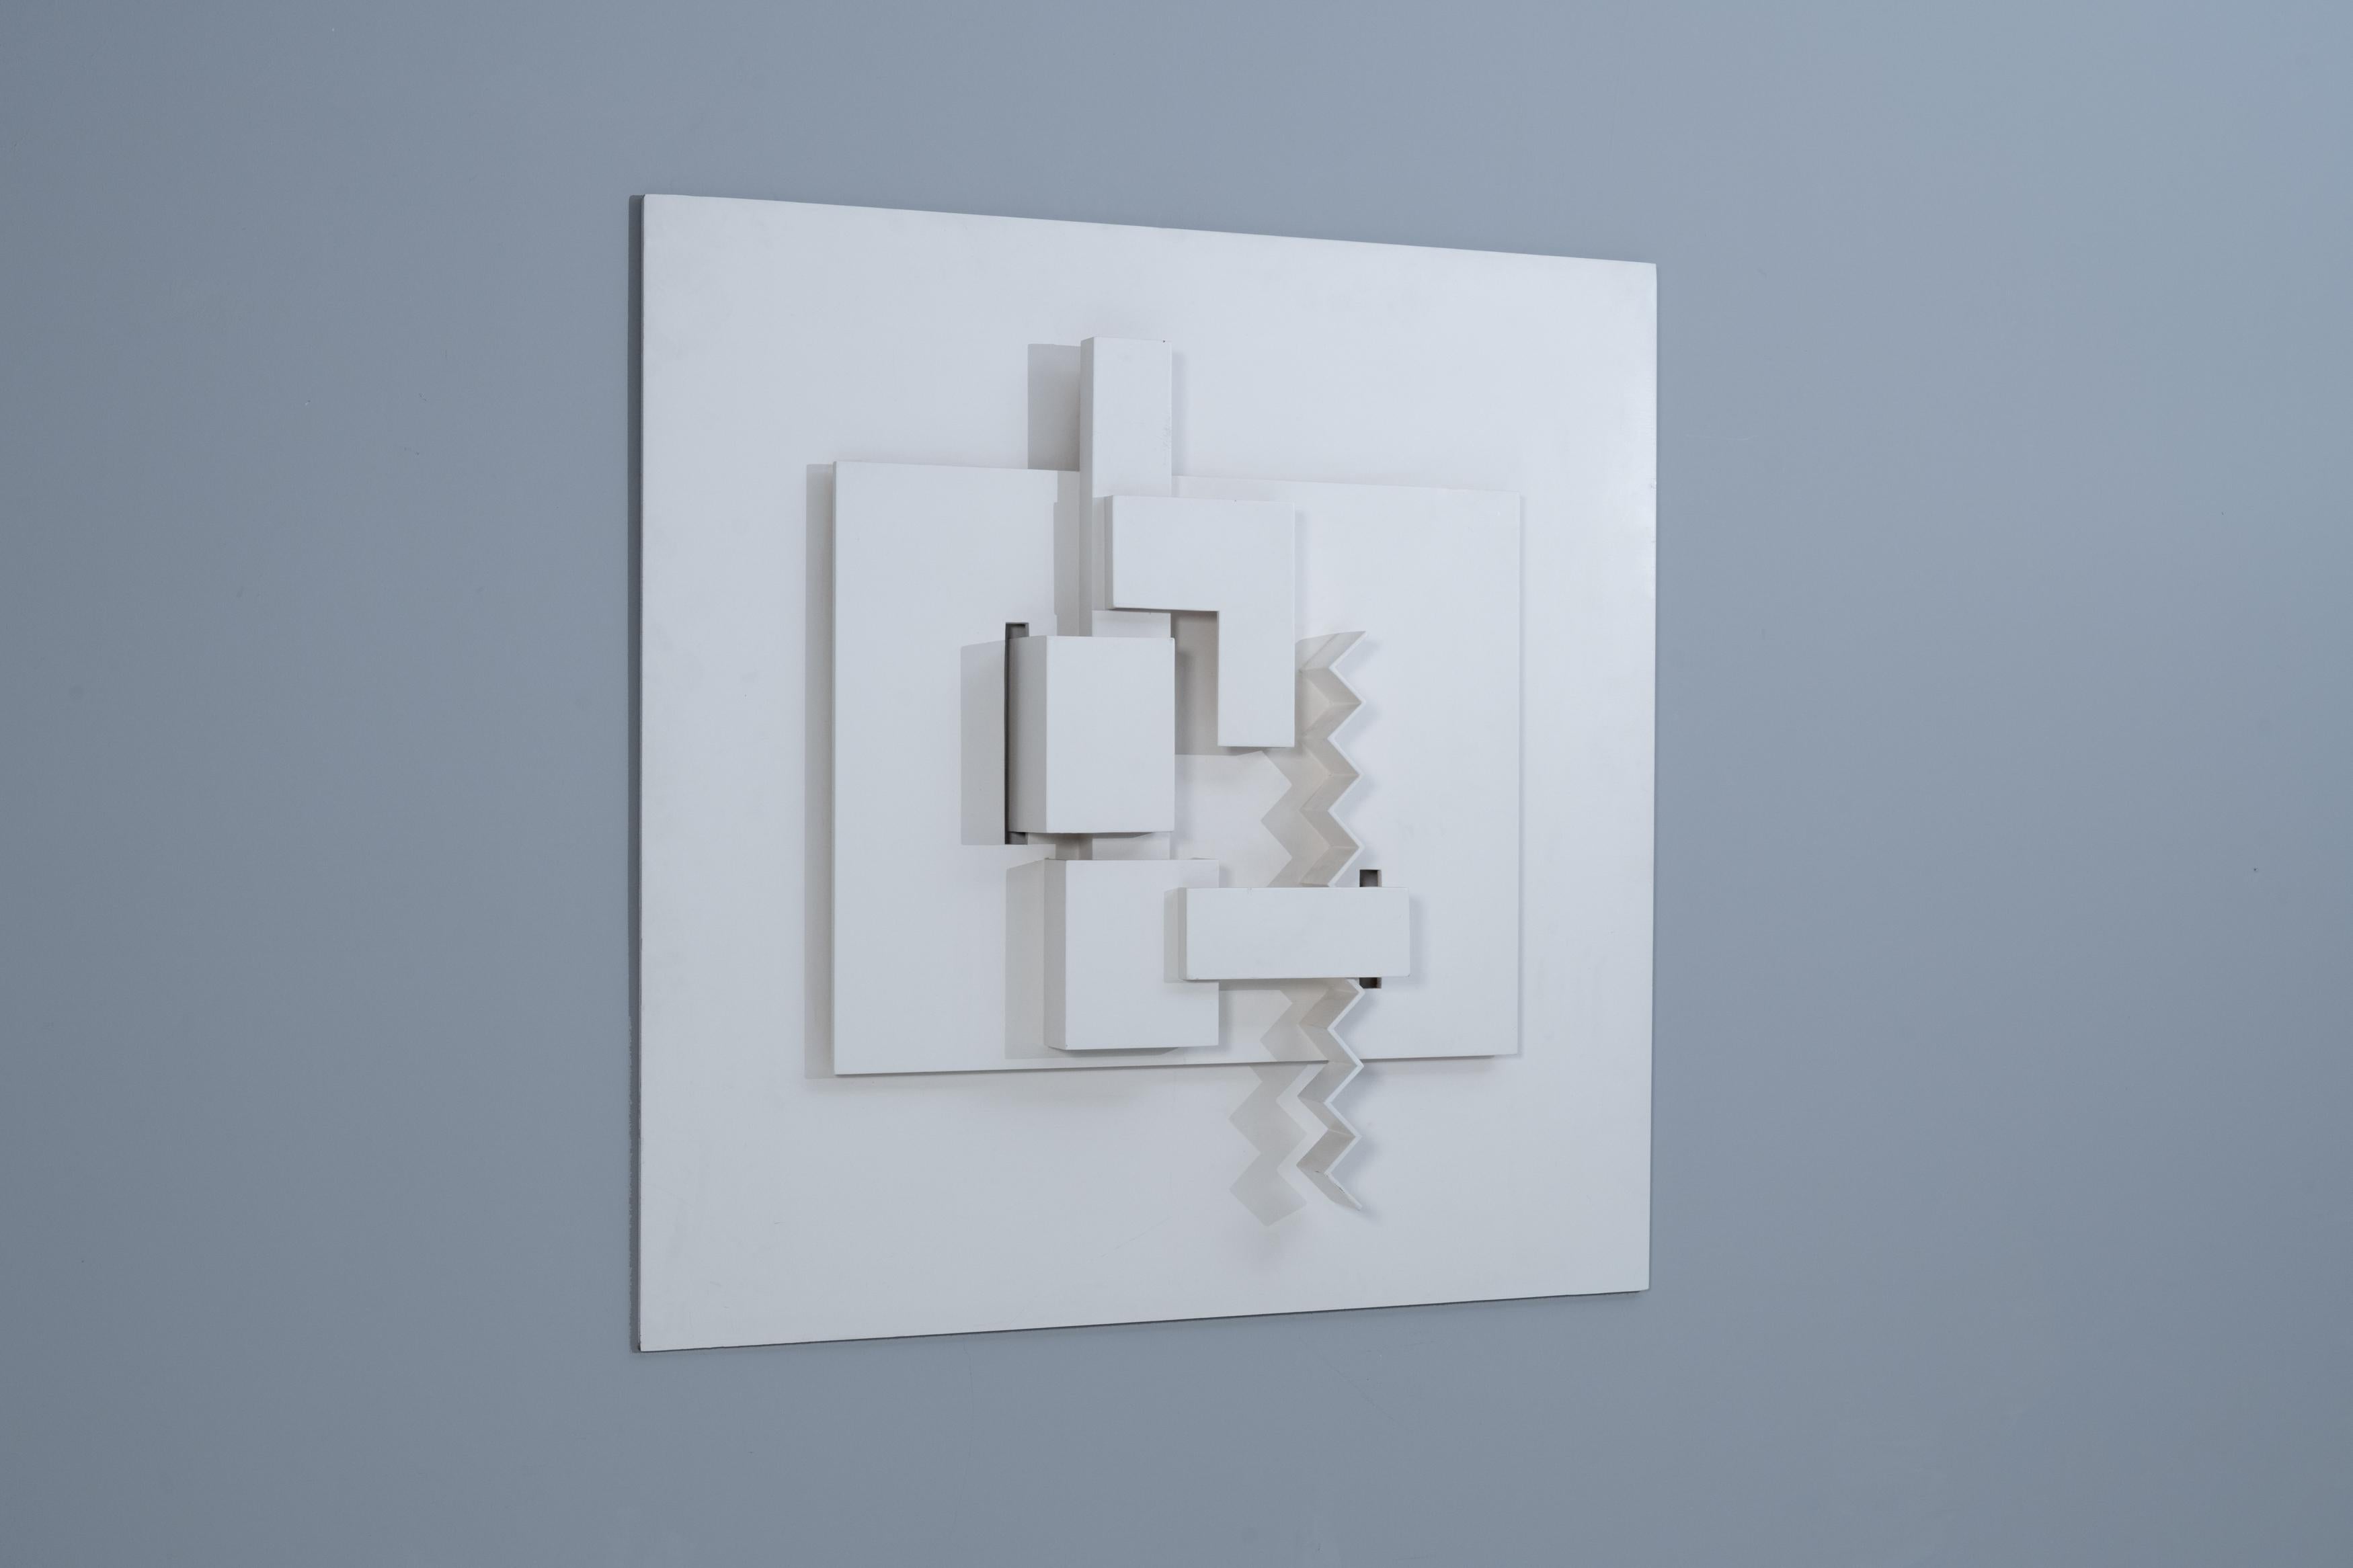 Das flache, konstruktivistische Holzrelief von Sascha Langer folgt einem geometrischen Formenvokabular, das in einem überzeugenden Proportionsverhältnis steht. Die gestapelten Segmente schaffen räumliche Tiefe und fordern den Blick des Betrachters